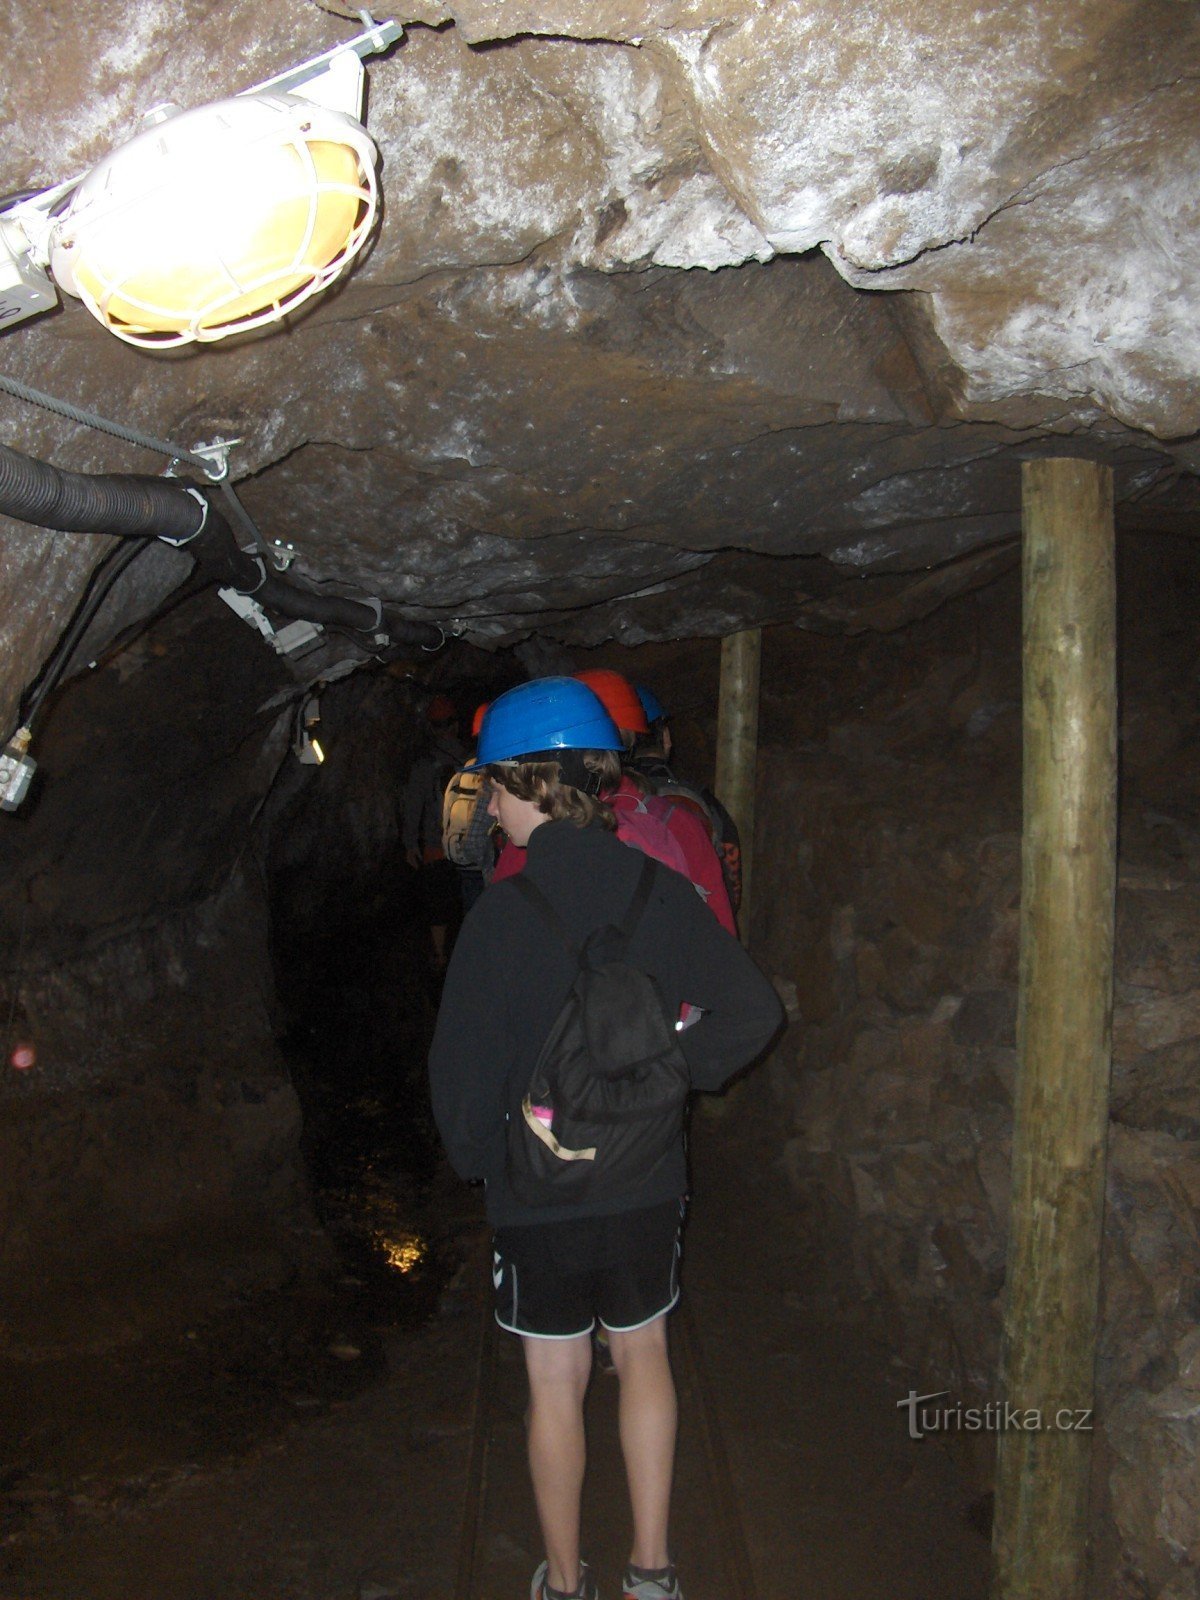 Túnel turístico Starý Martin.